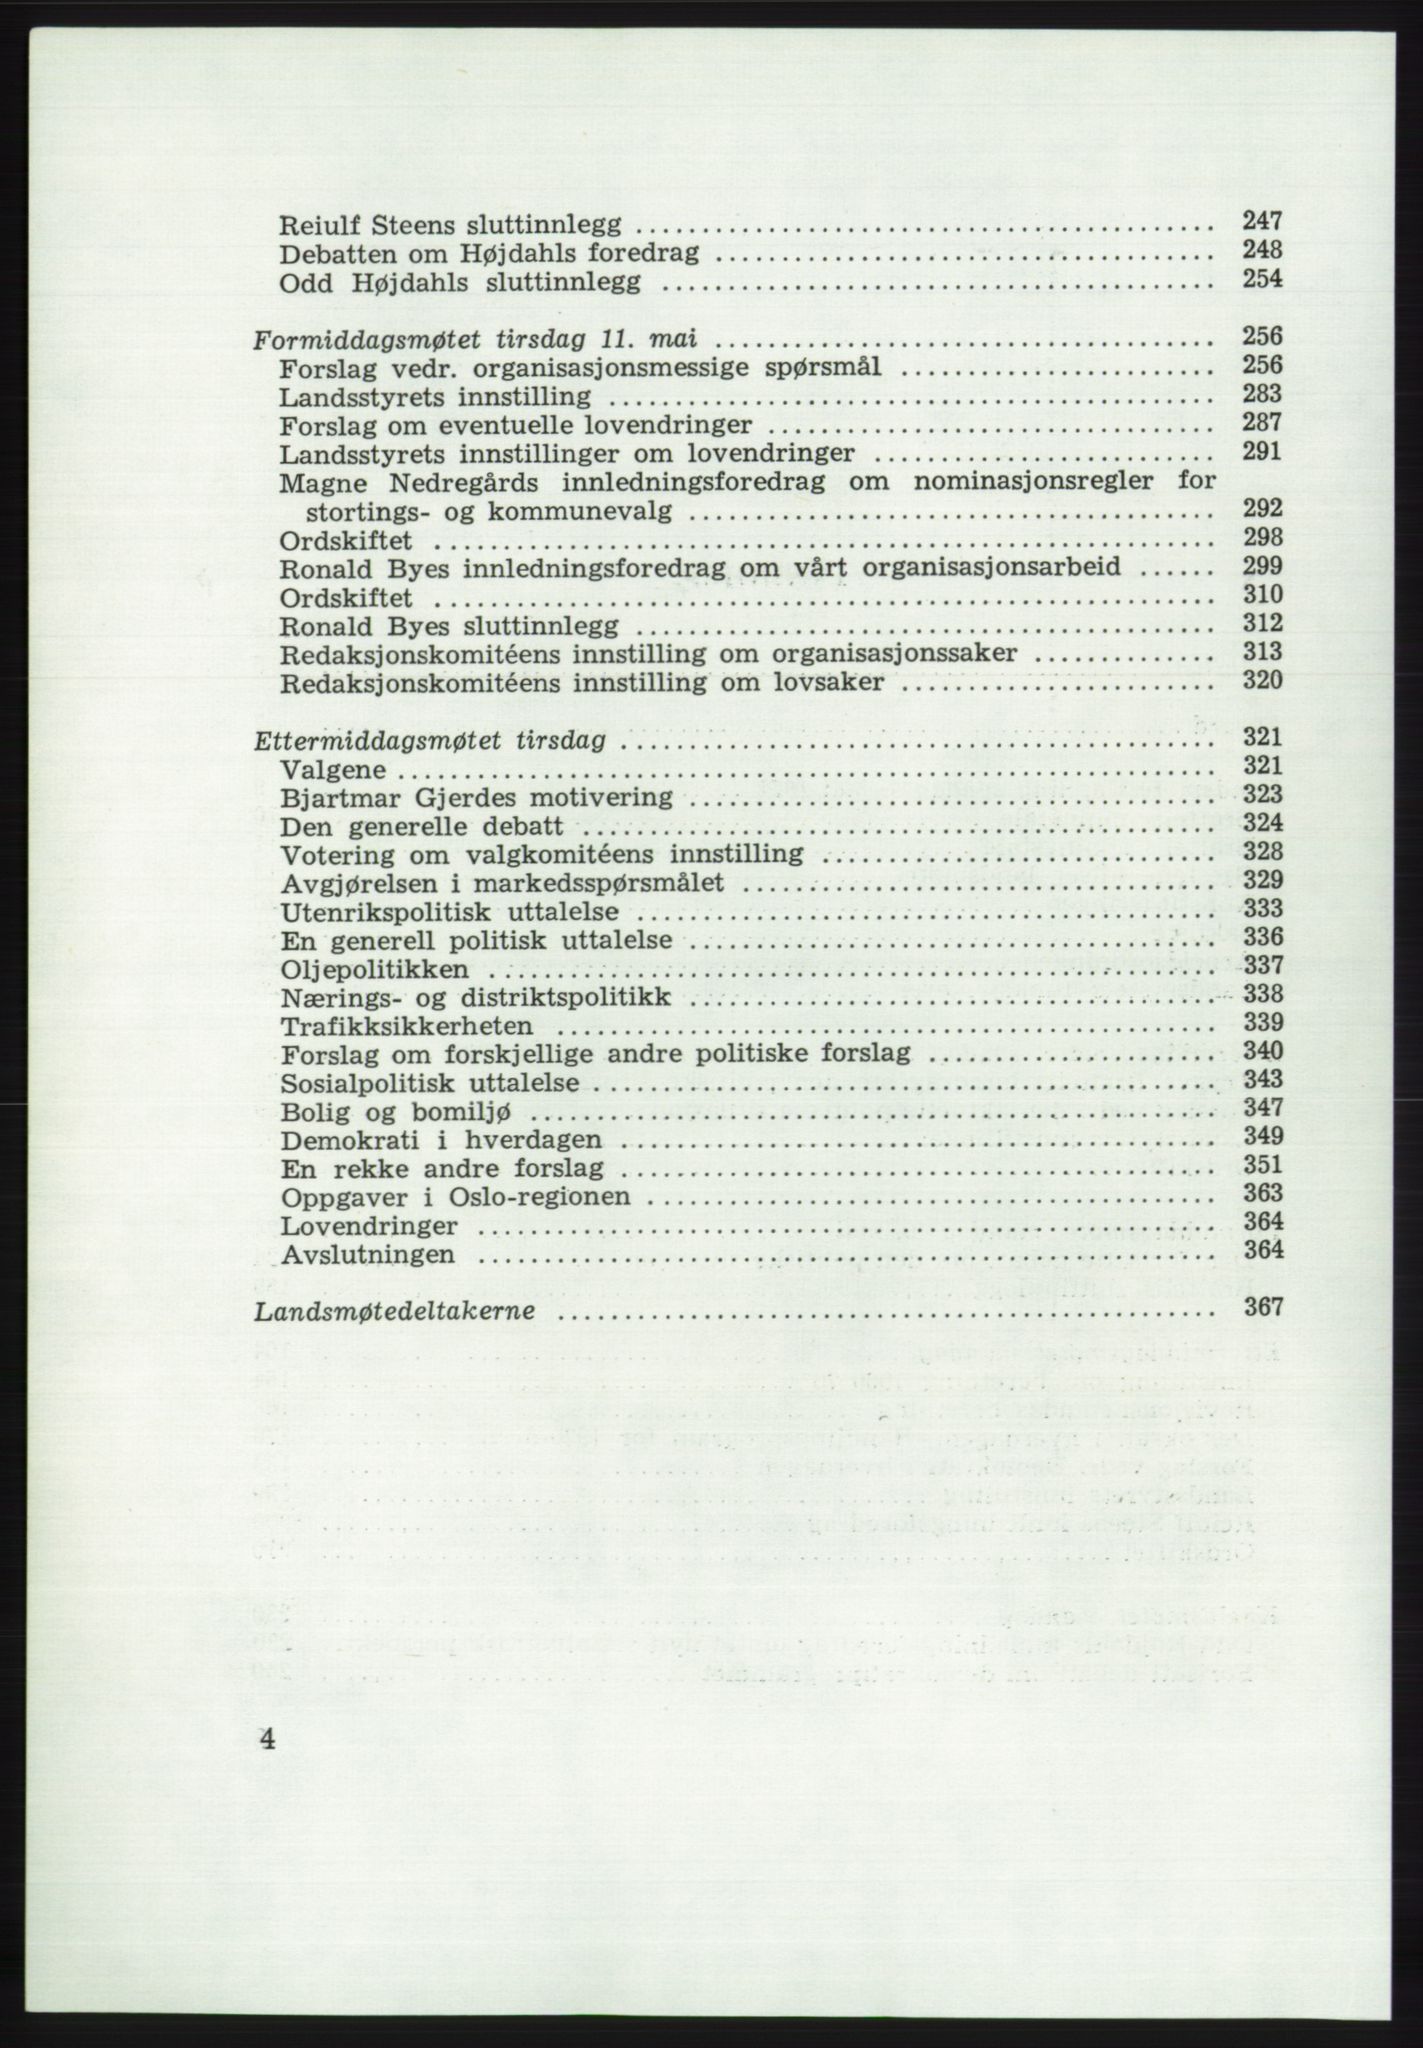 Det norske Arbeiderparti - publikasjoner, AAB/-/-/-: Protokoll over forhandlingene på det 43. ordinære landsmøte 9.-11. mai 1971 i Oslo, 1971, s. 4